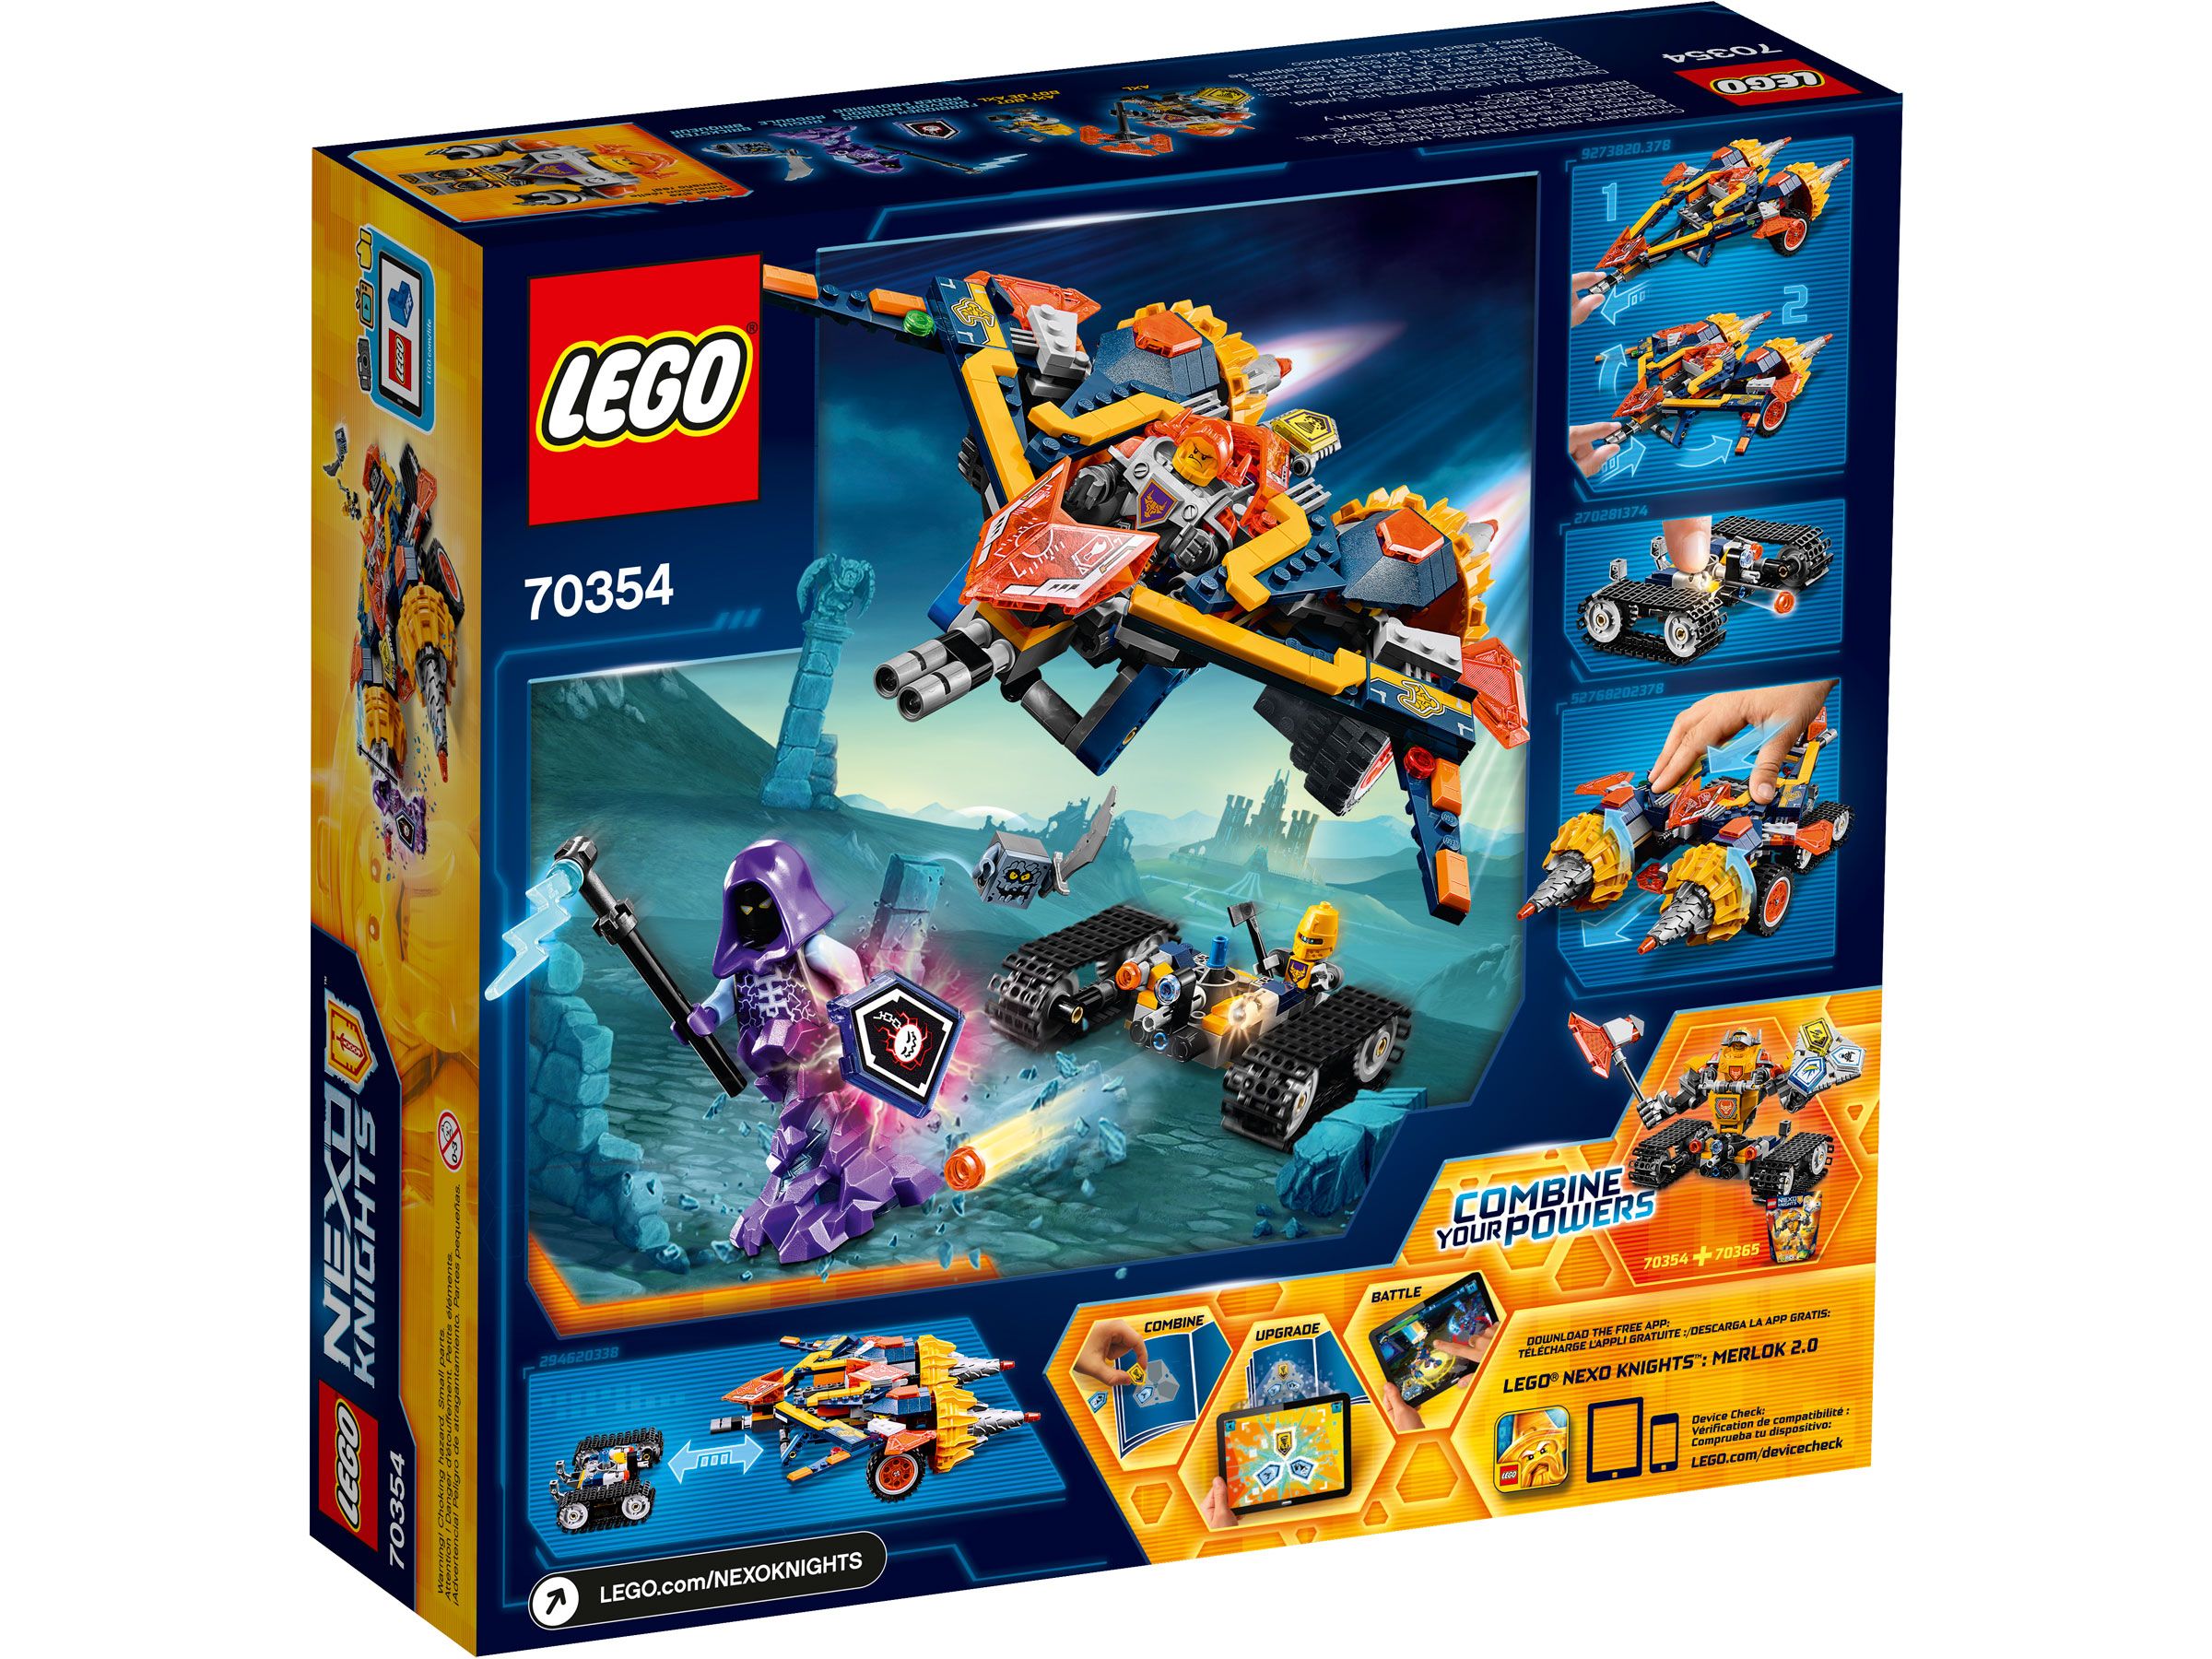 LEGO Nexo Knights 70354 Axls Krawallmacher LEGO_70354_Box5_v39.jpg